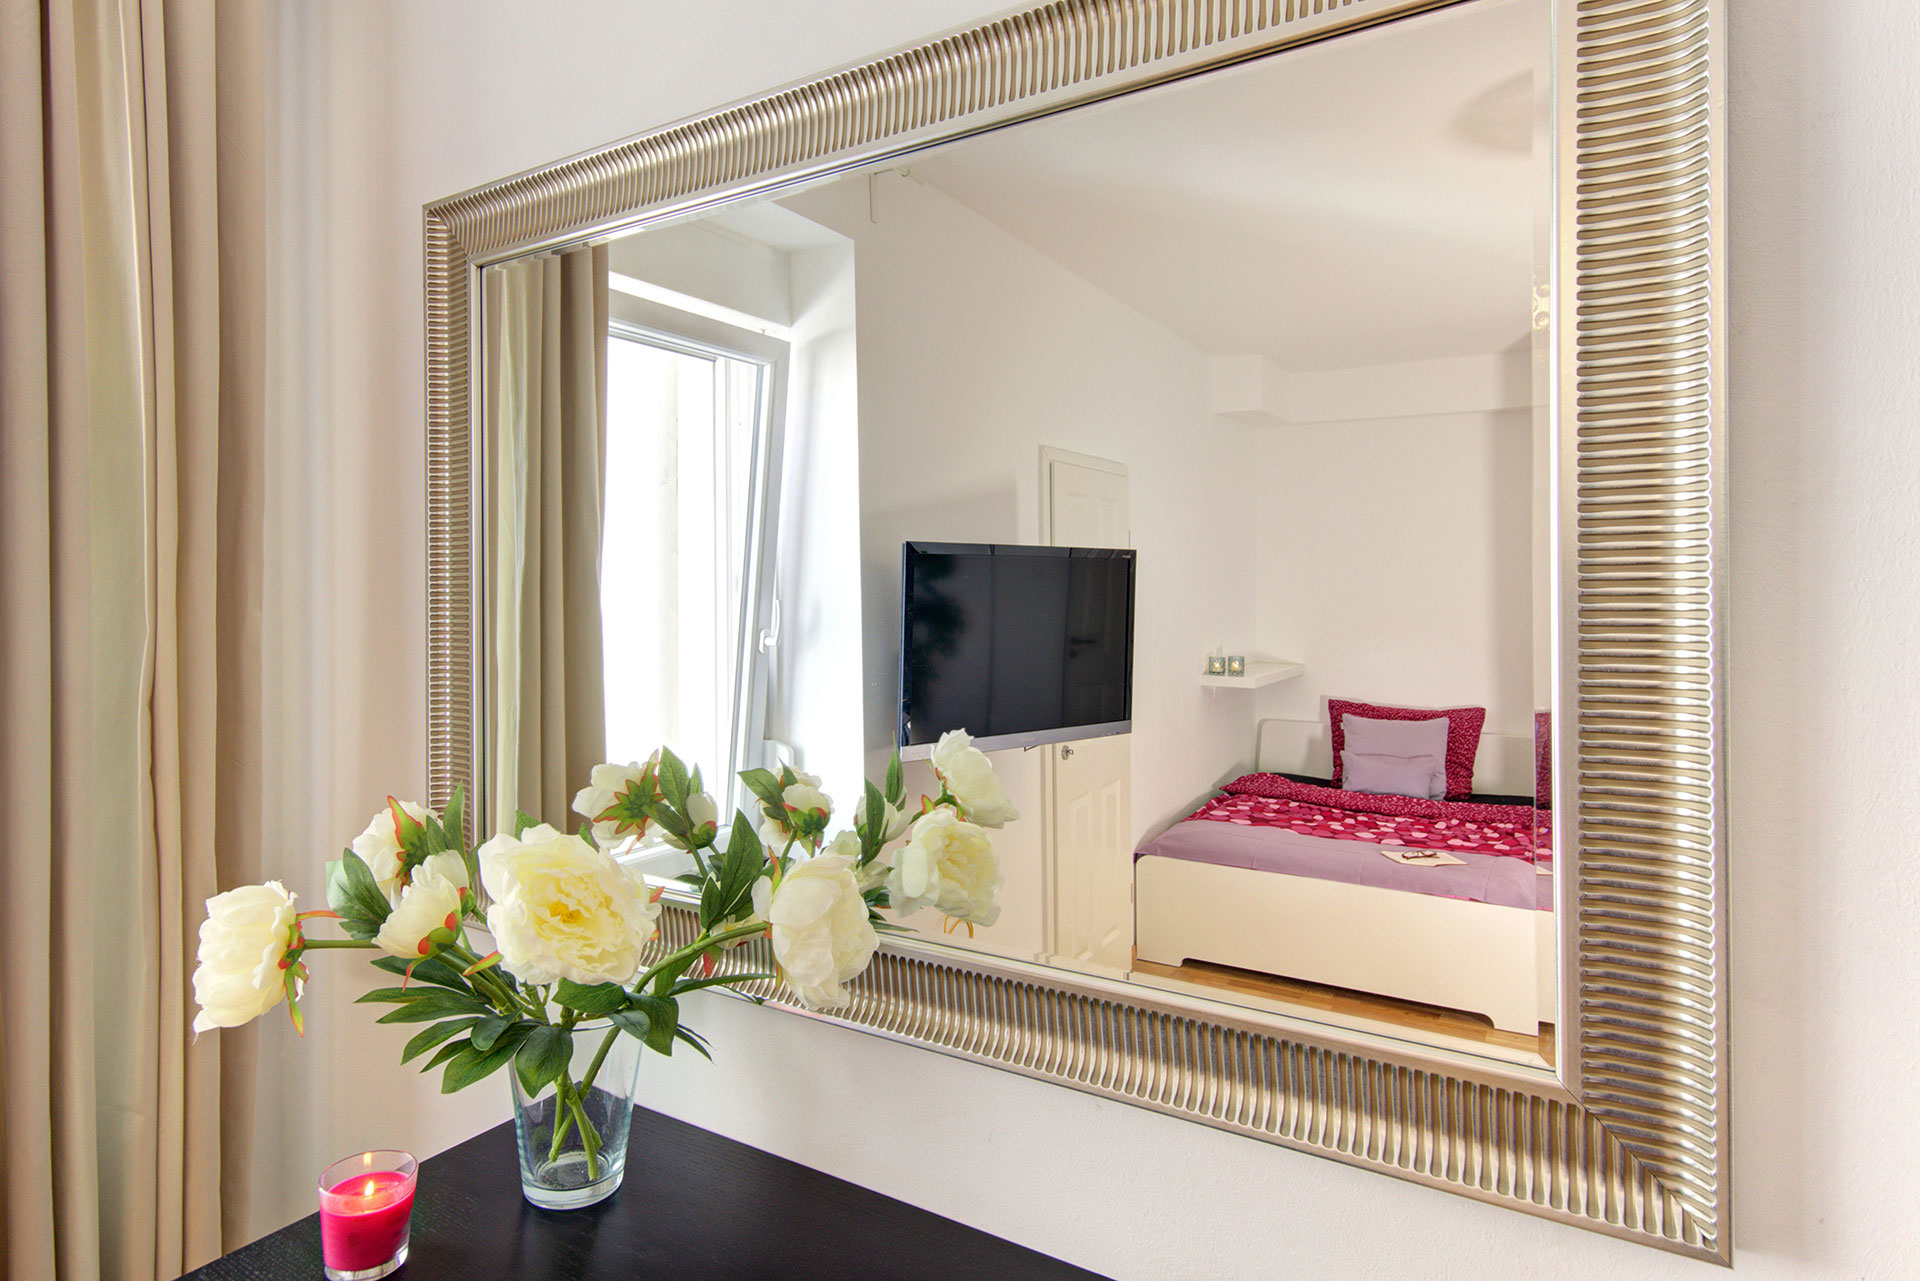 fotografin dekoriert grosse pfingstrosenstrauss vor spiegel mit blick auf einzelbett und tvmonitor